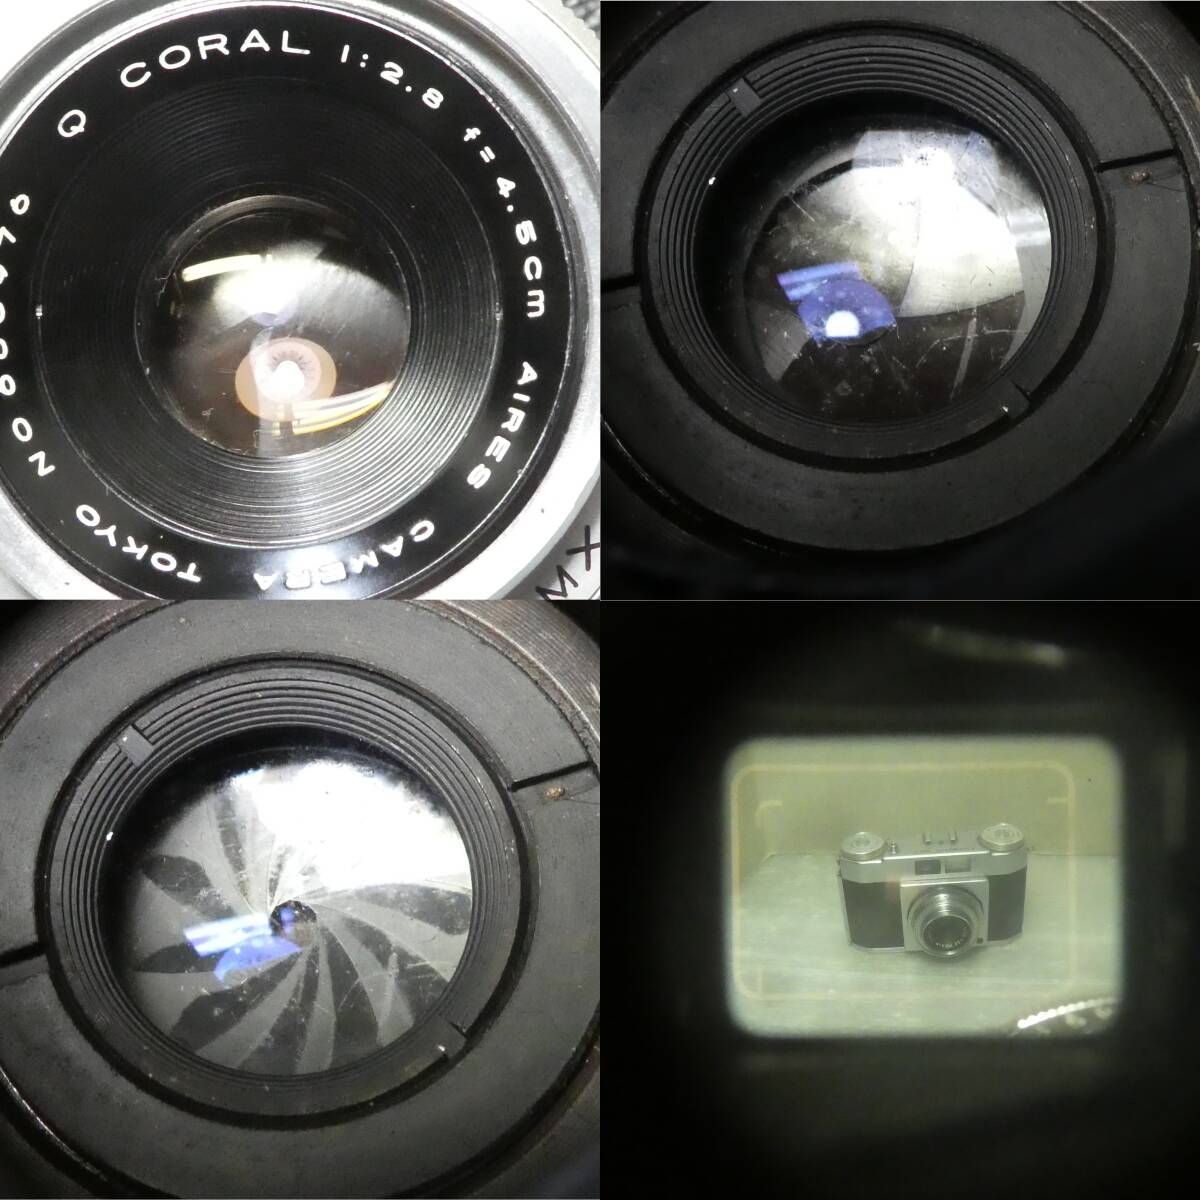 フイルム(コンパクト)カメラ(585)  Aires 35-ⅢA Q CORAL 2.8/45 OLYMPUS WIDE D.Zuiko 3.5/35 金属フード ジャンクセットの画像8